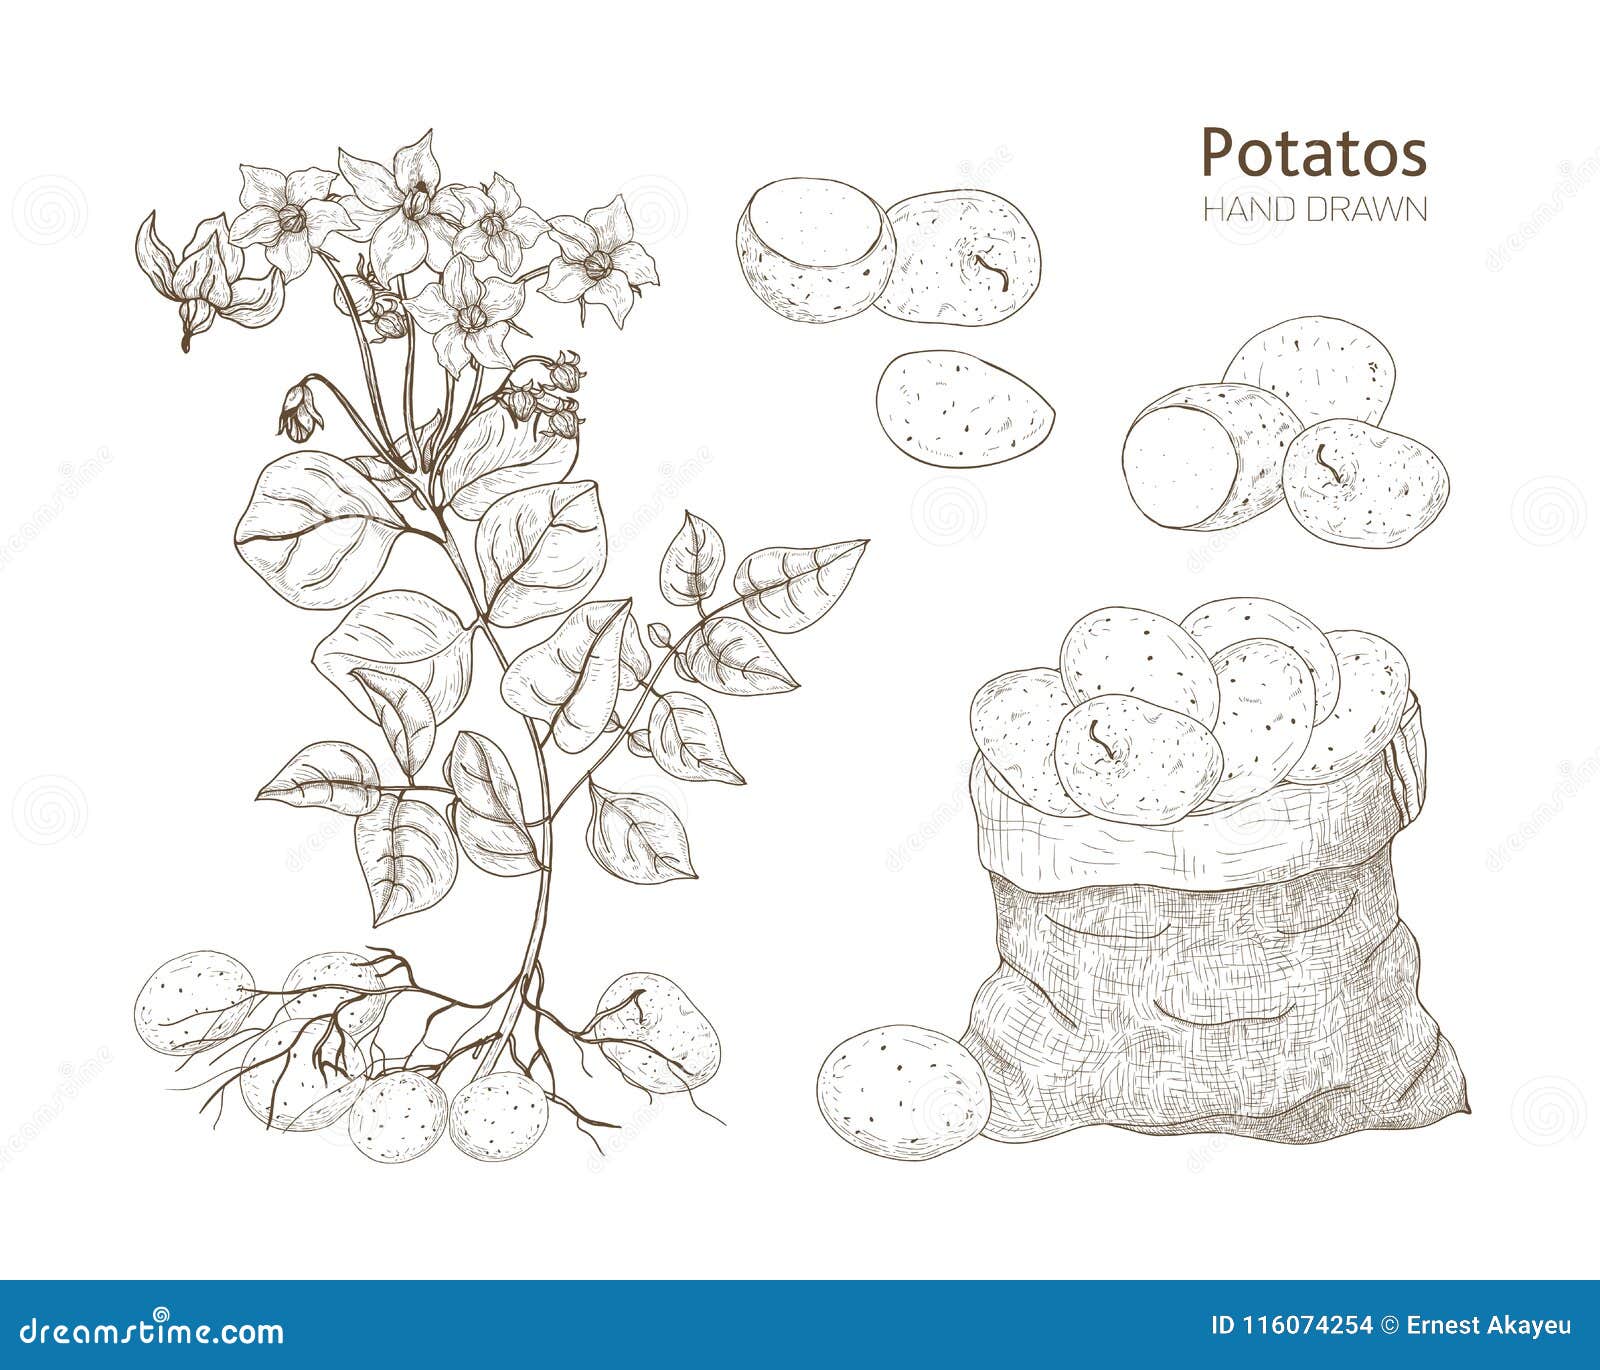 Verwonderend Elegante Zwart-wit Botanische Tekeningen Van Aardappelplant Met OF-05